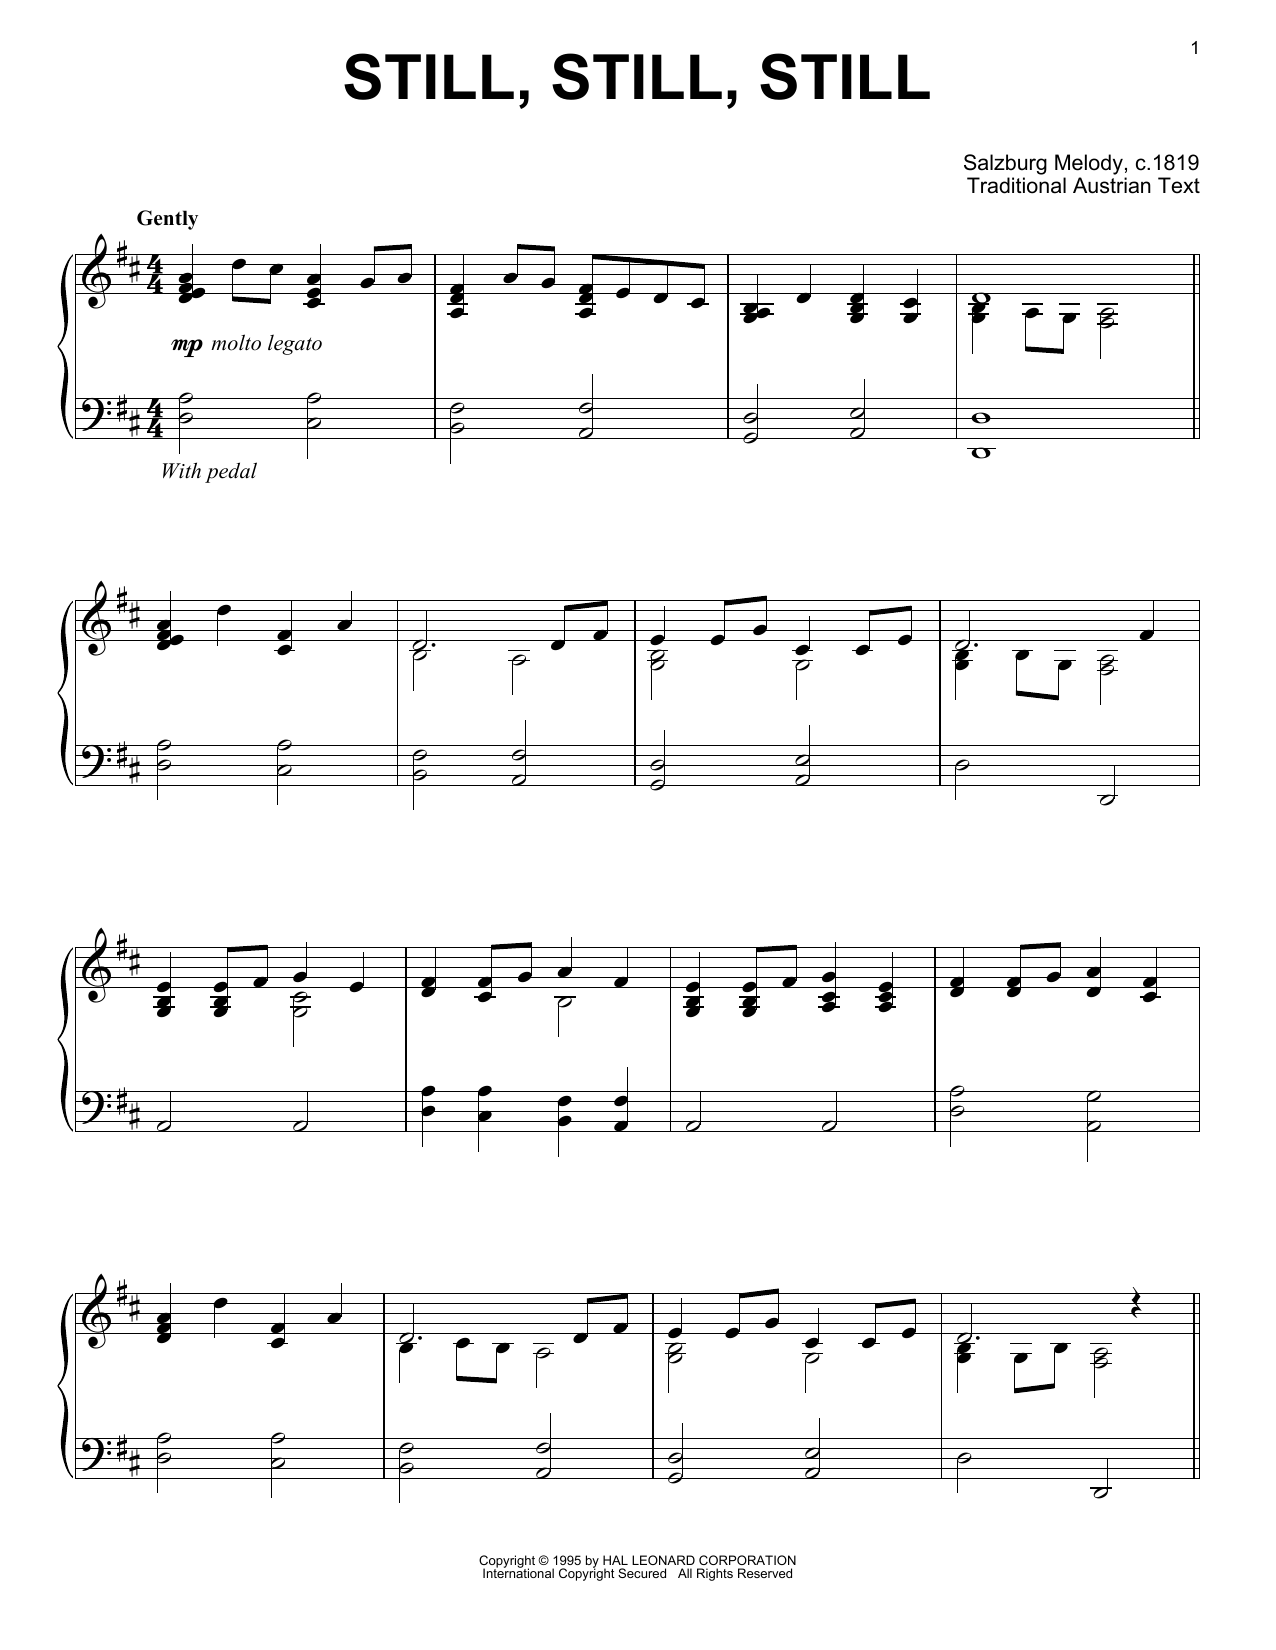 Traditional Austrian Text Still, Still, Still sheet music notes and chords arranged for Violin Solo